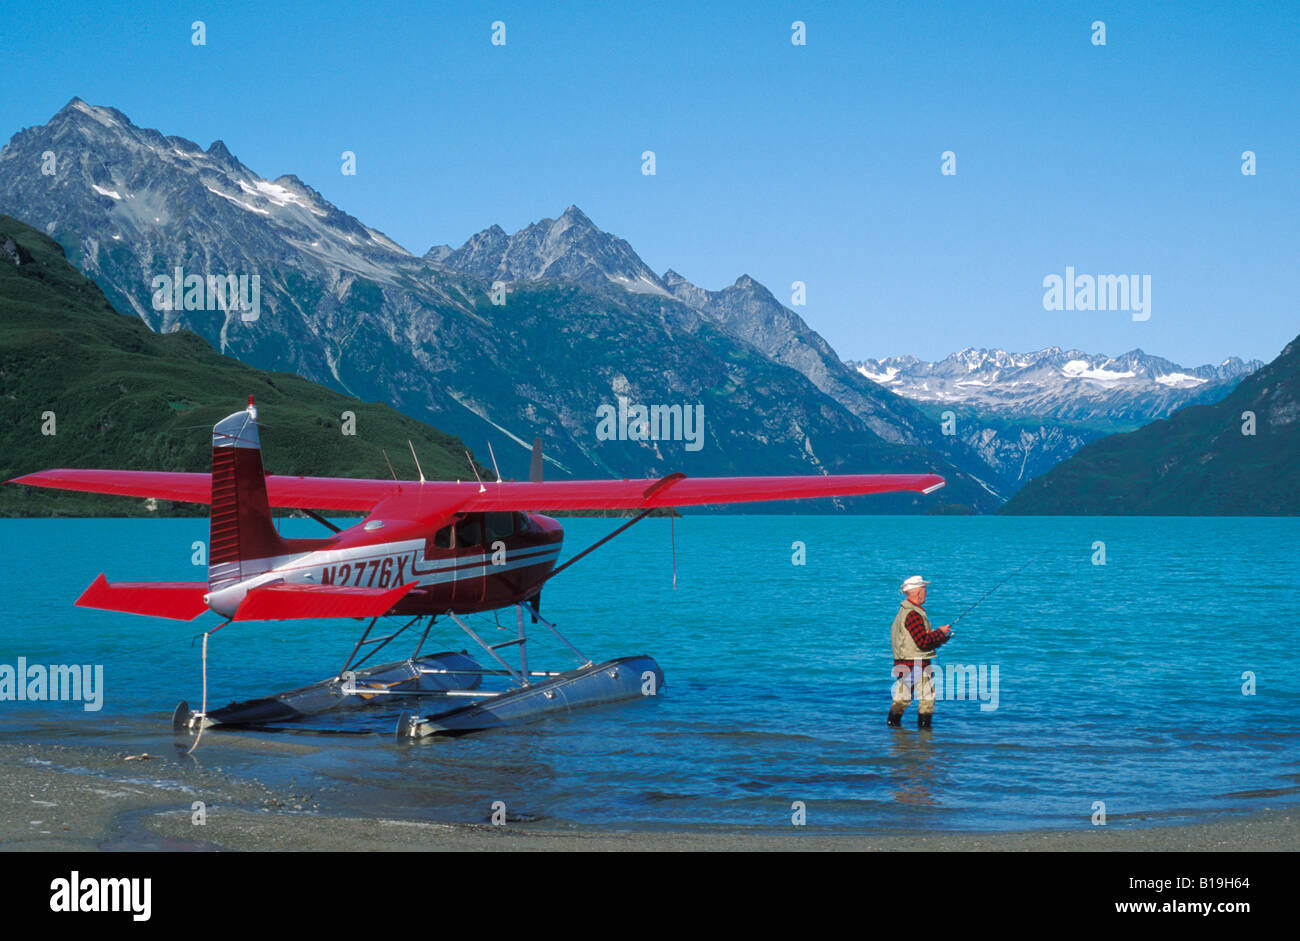 USA, Alaska, Lake Clark National Park. Yogi de pêche du saumon Kaufman à côté d'un avion Cessna 180 dans la région de Crescent Lake. Banque D'Images